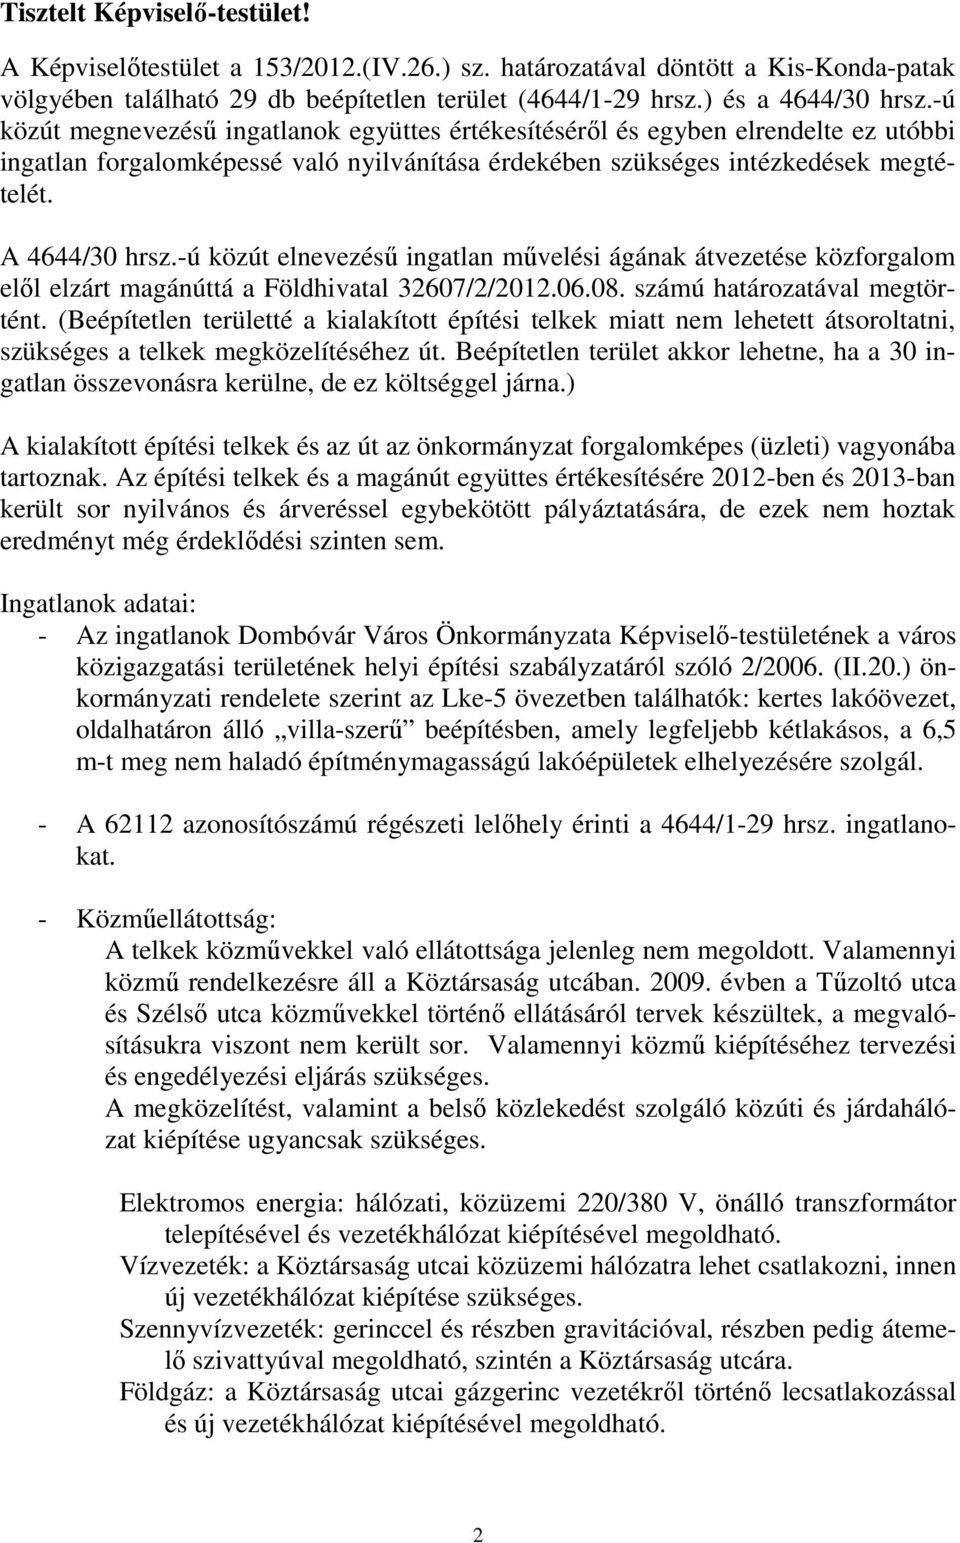 -ú közút elnevezésű ingatlan művelési ágának átvezetése közforgalom elől elzárt magánúttá a Földhivatal 32607/2/2012.06.08. számú határozatával megtörtént.